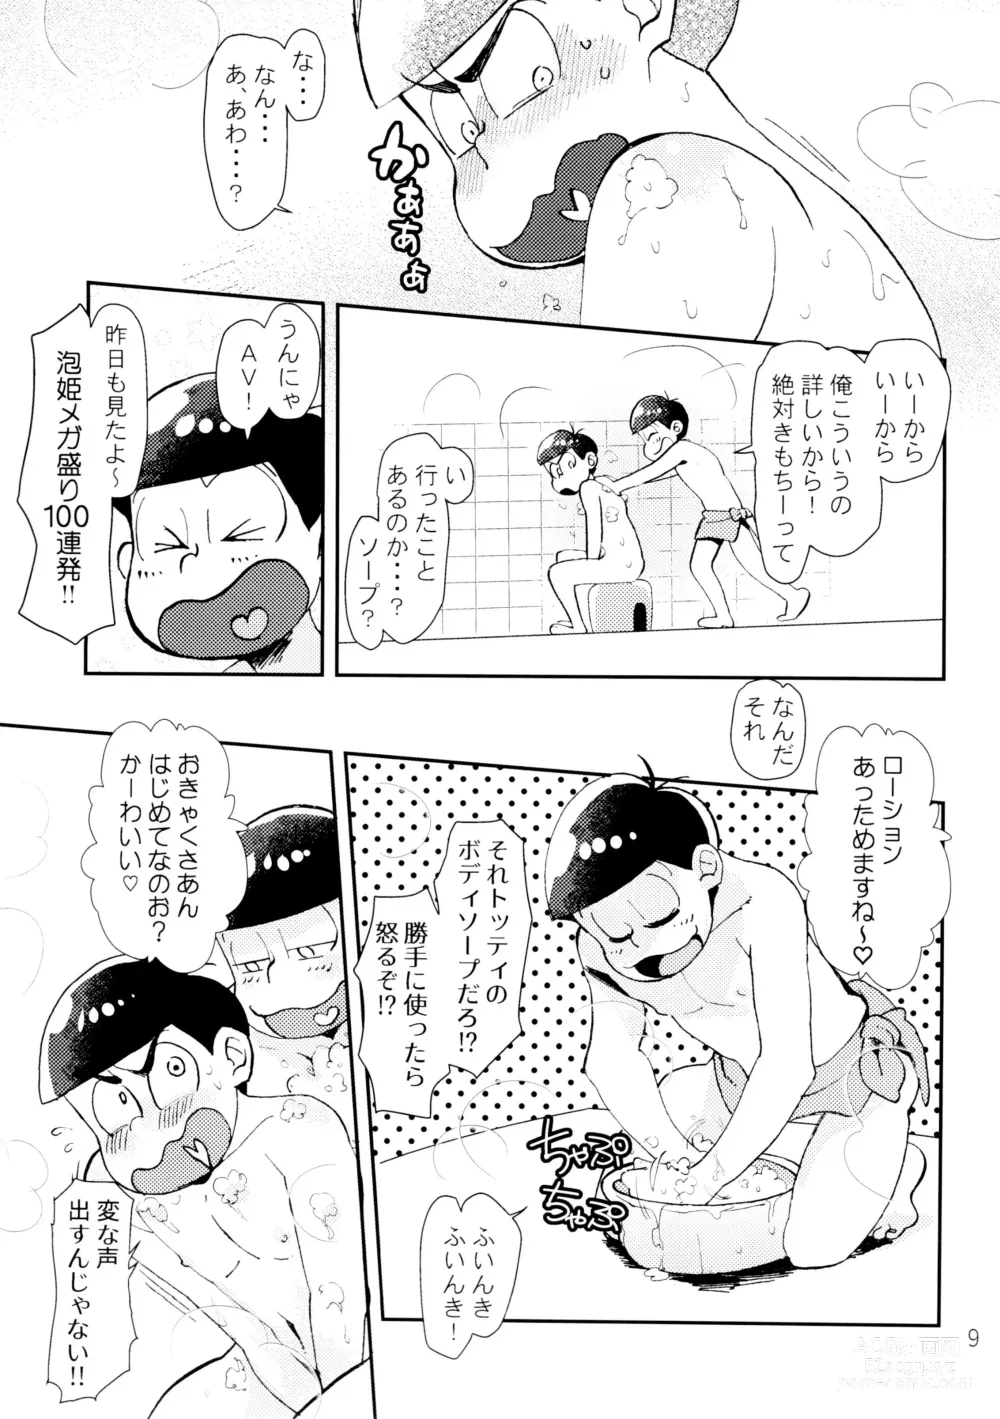 Page 9 of doujinshi Lovely Honey Punkish